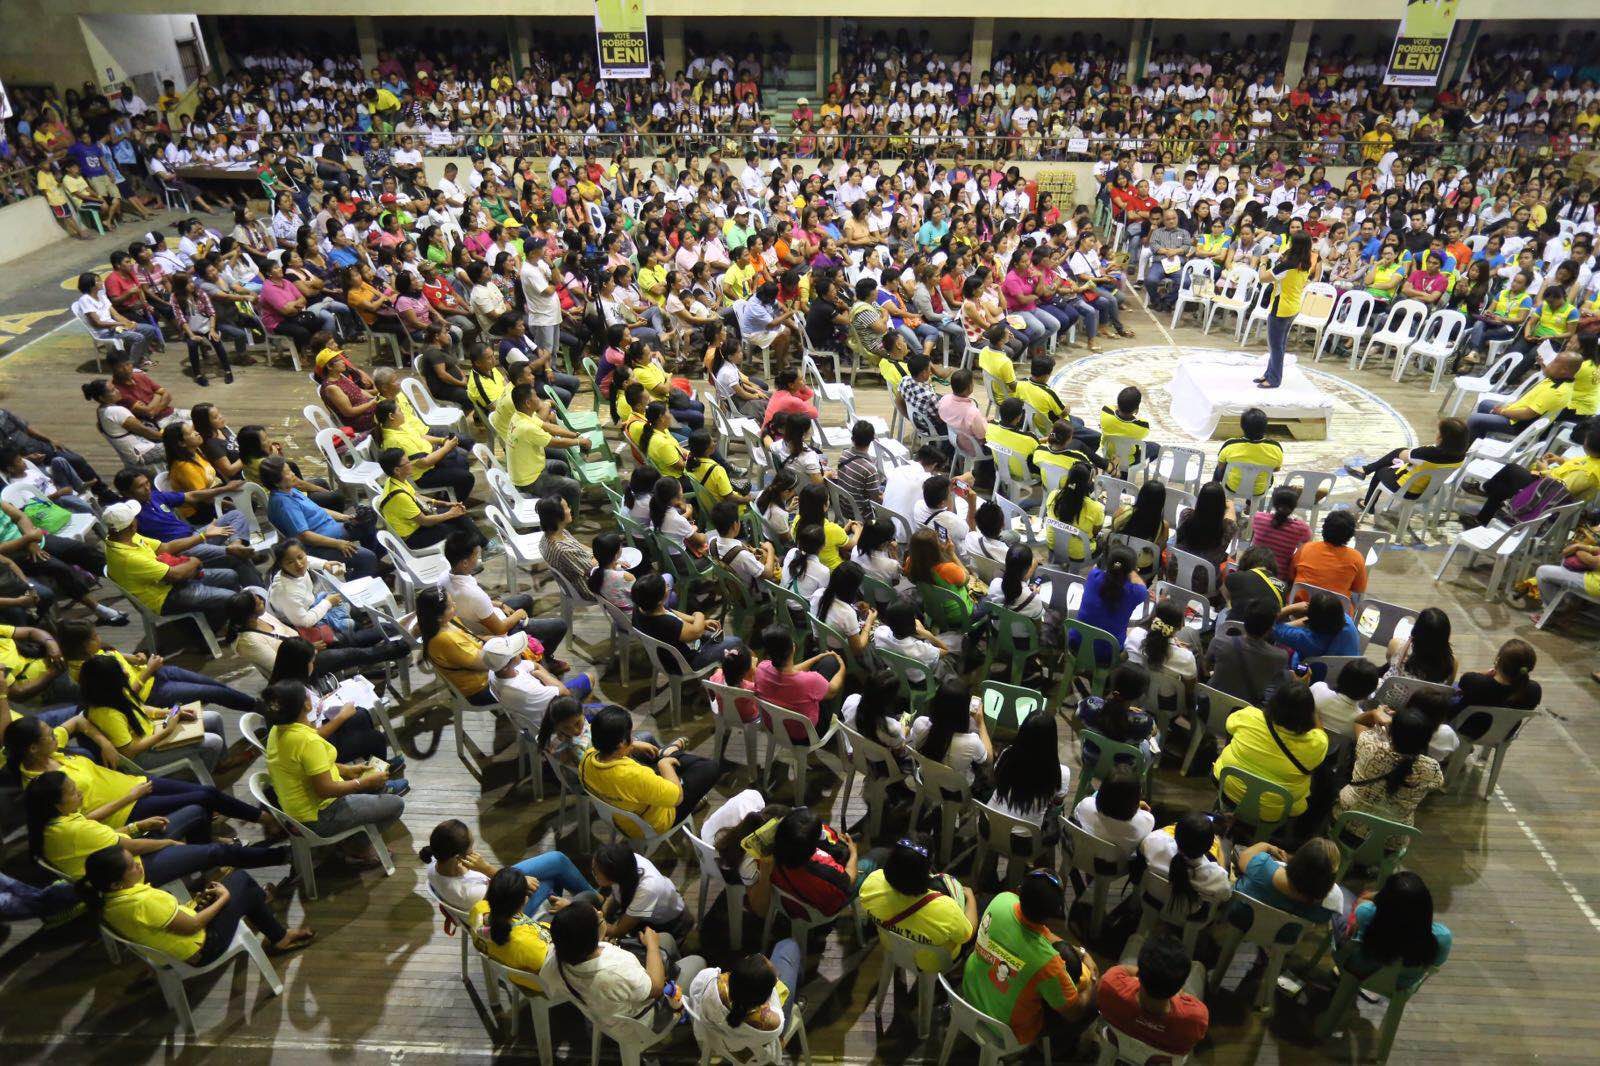 STUMP SPEECH. Leni Robredo campaigns in Davao region. File photo 